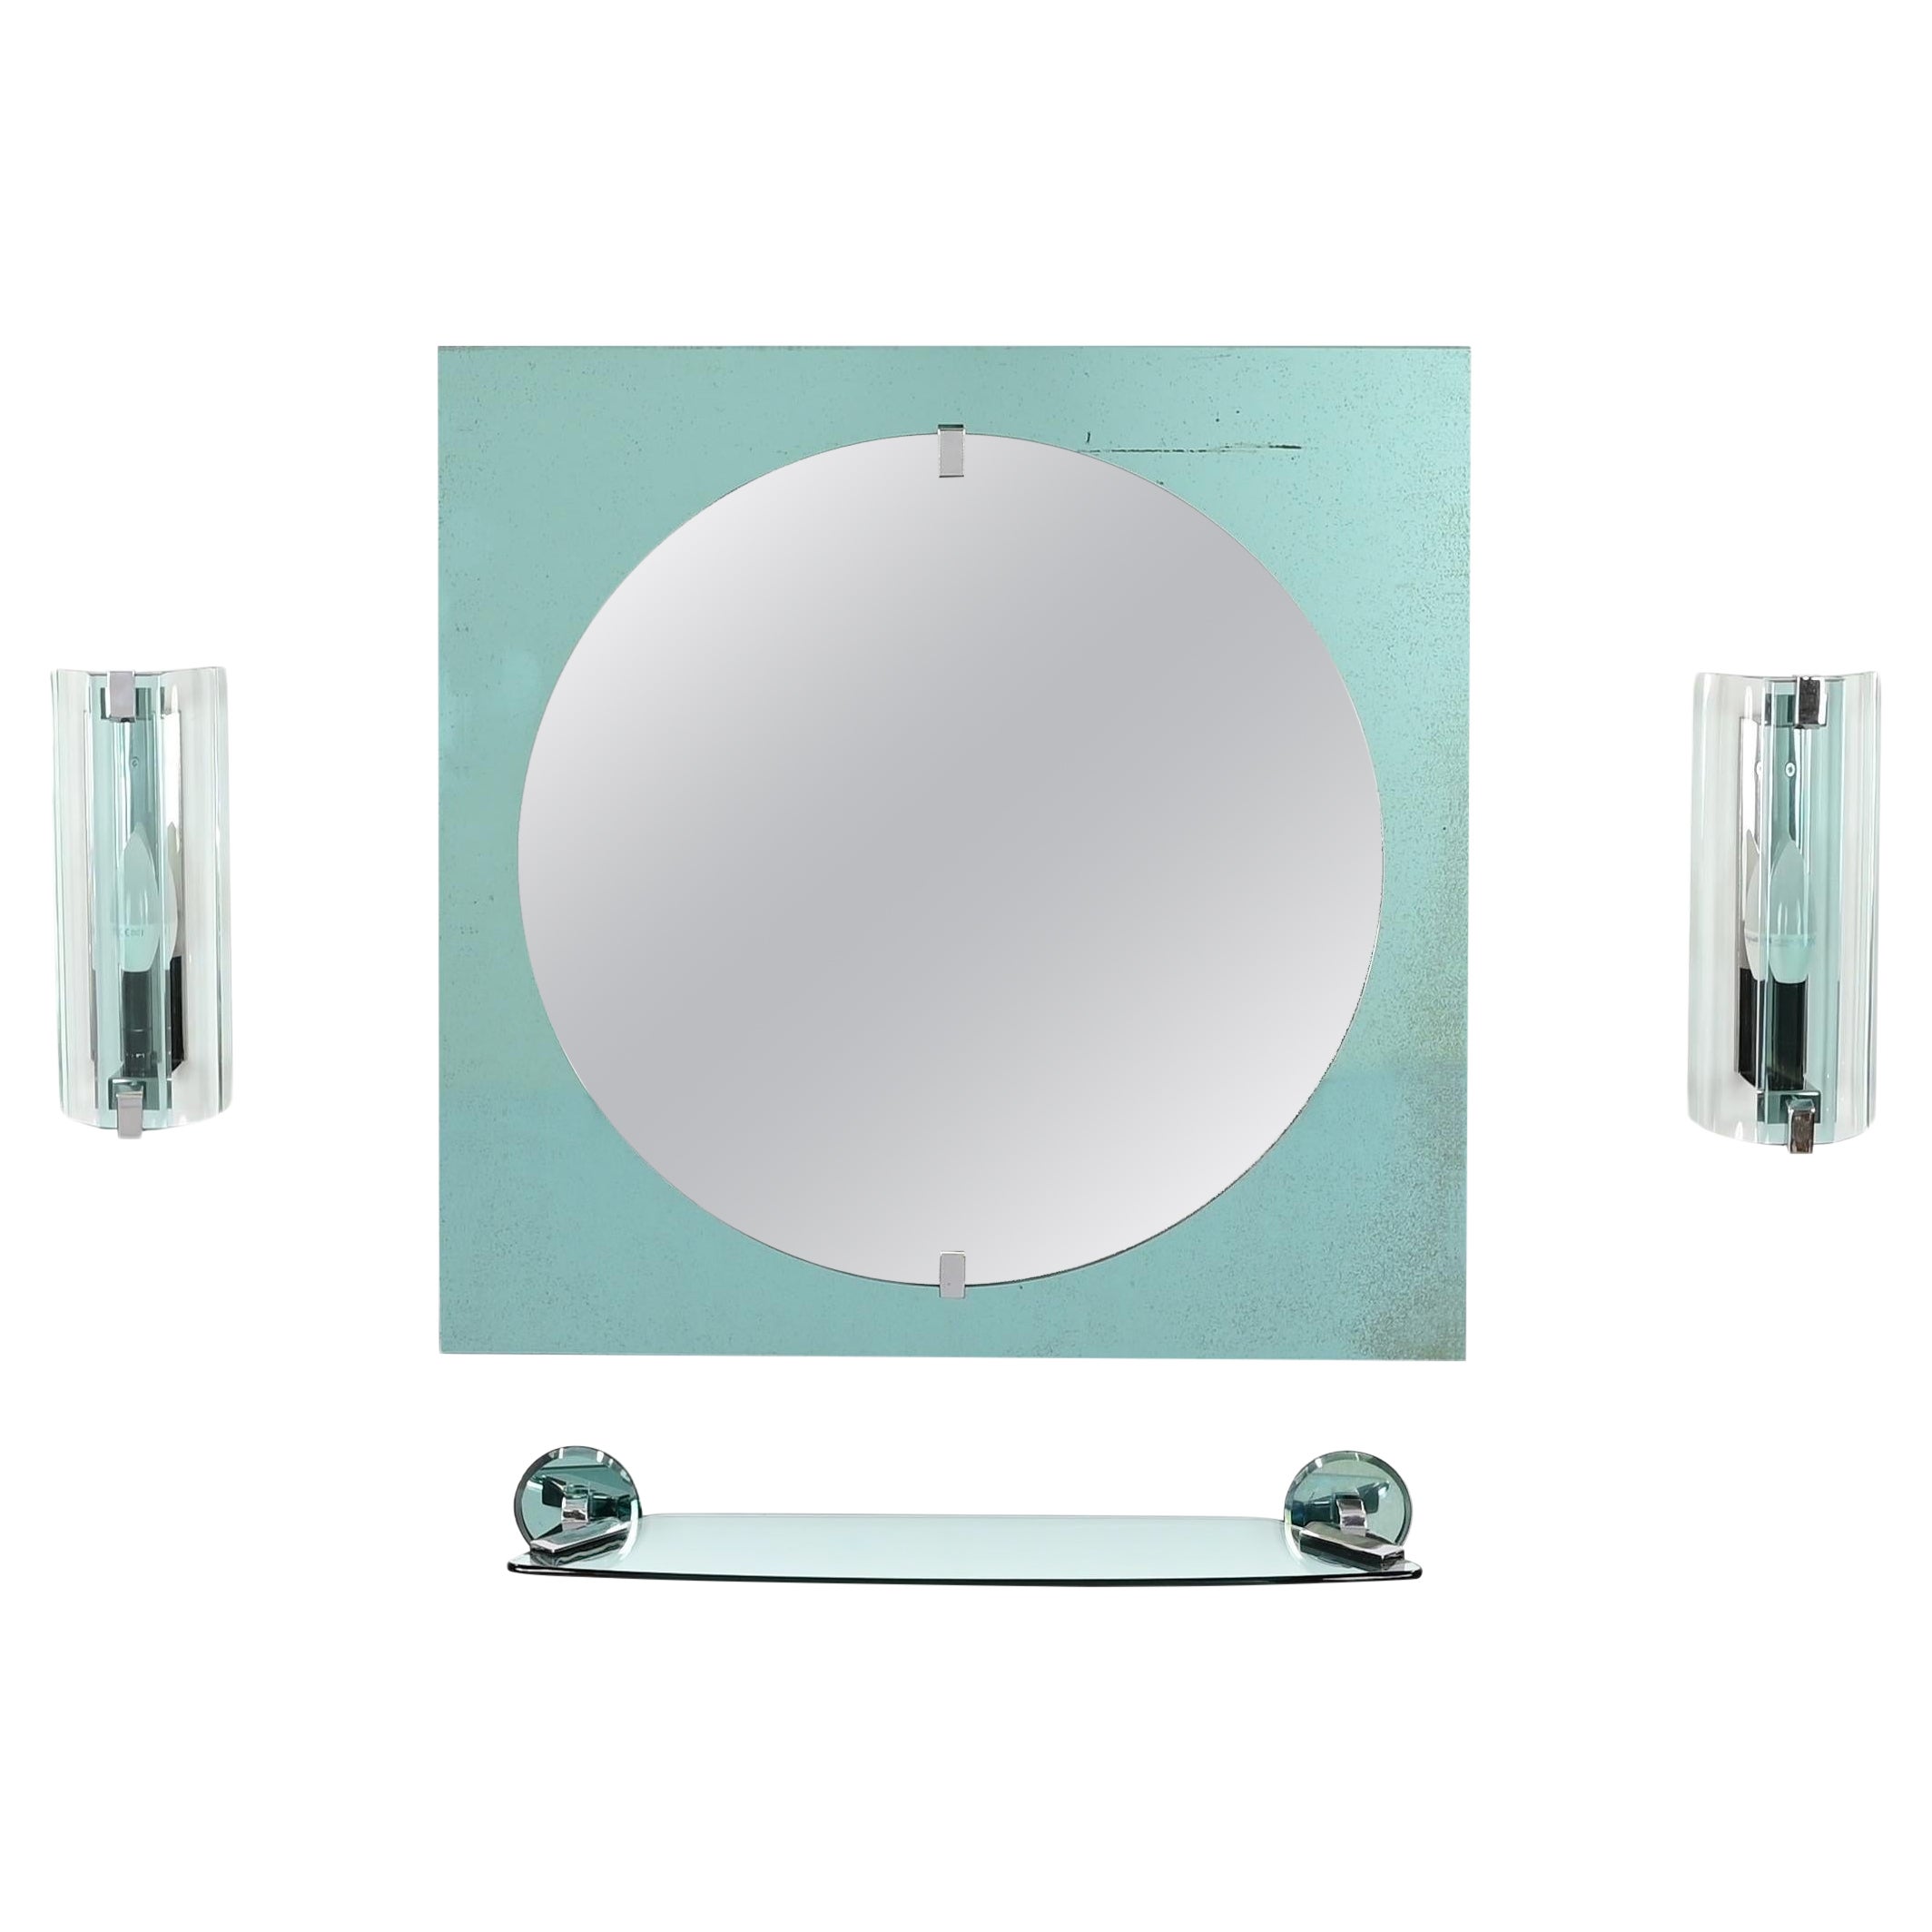 Tiffanyblaues italienisches Badezimmer-Waschtisch-Set Spiegel, Wandleuchter, Regal von VECA, 1970er Jahre